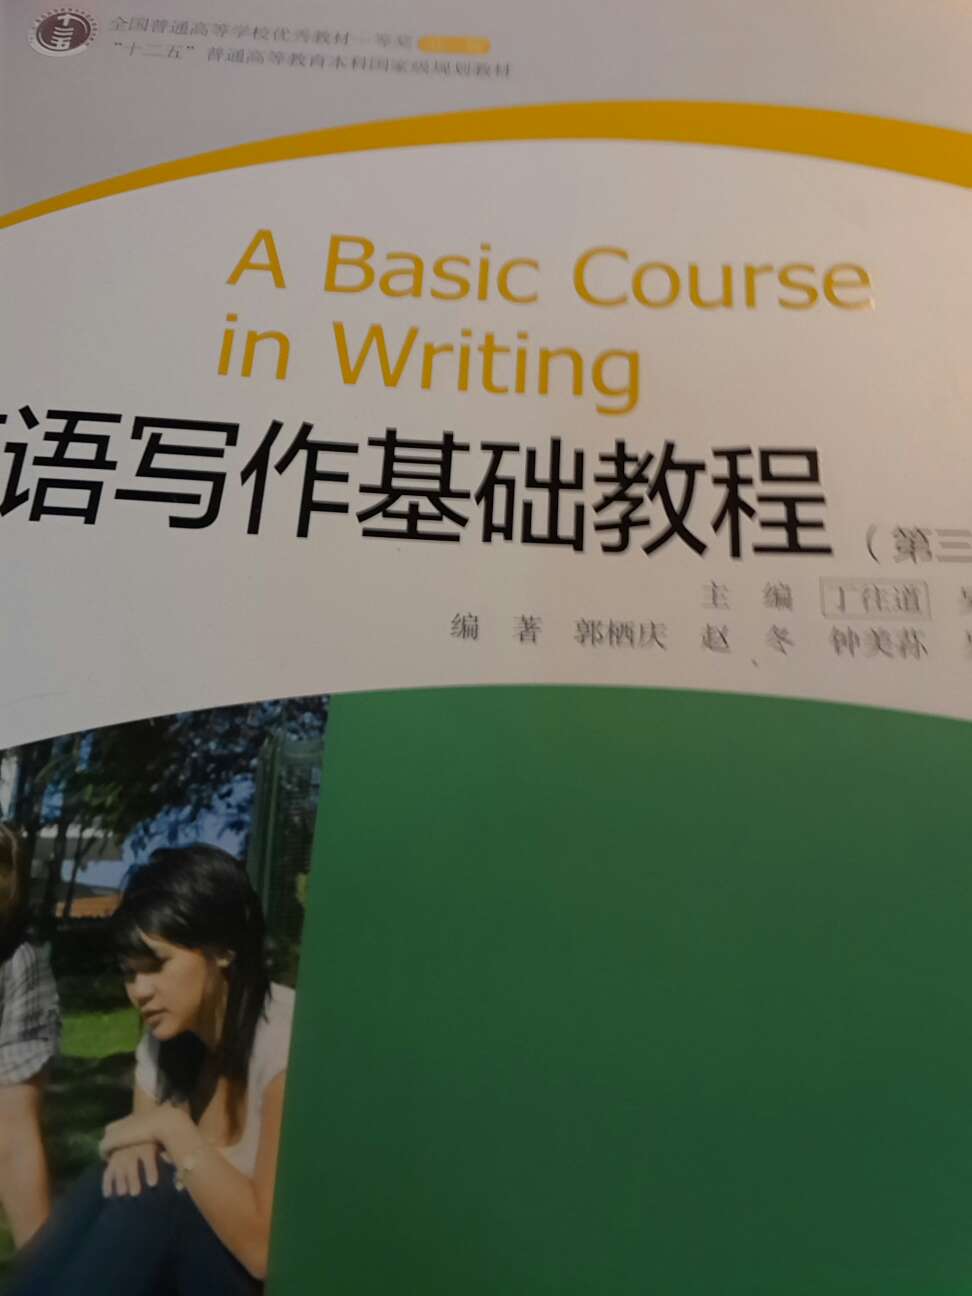 这是英语专业同学用的书，对于非专业的学习者来说还是有难度的。